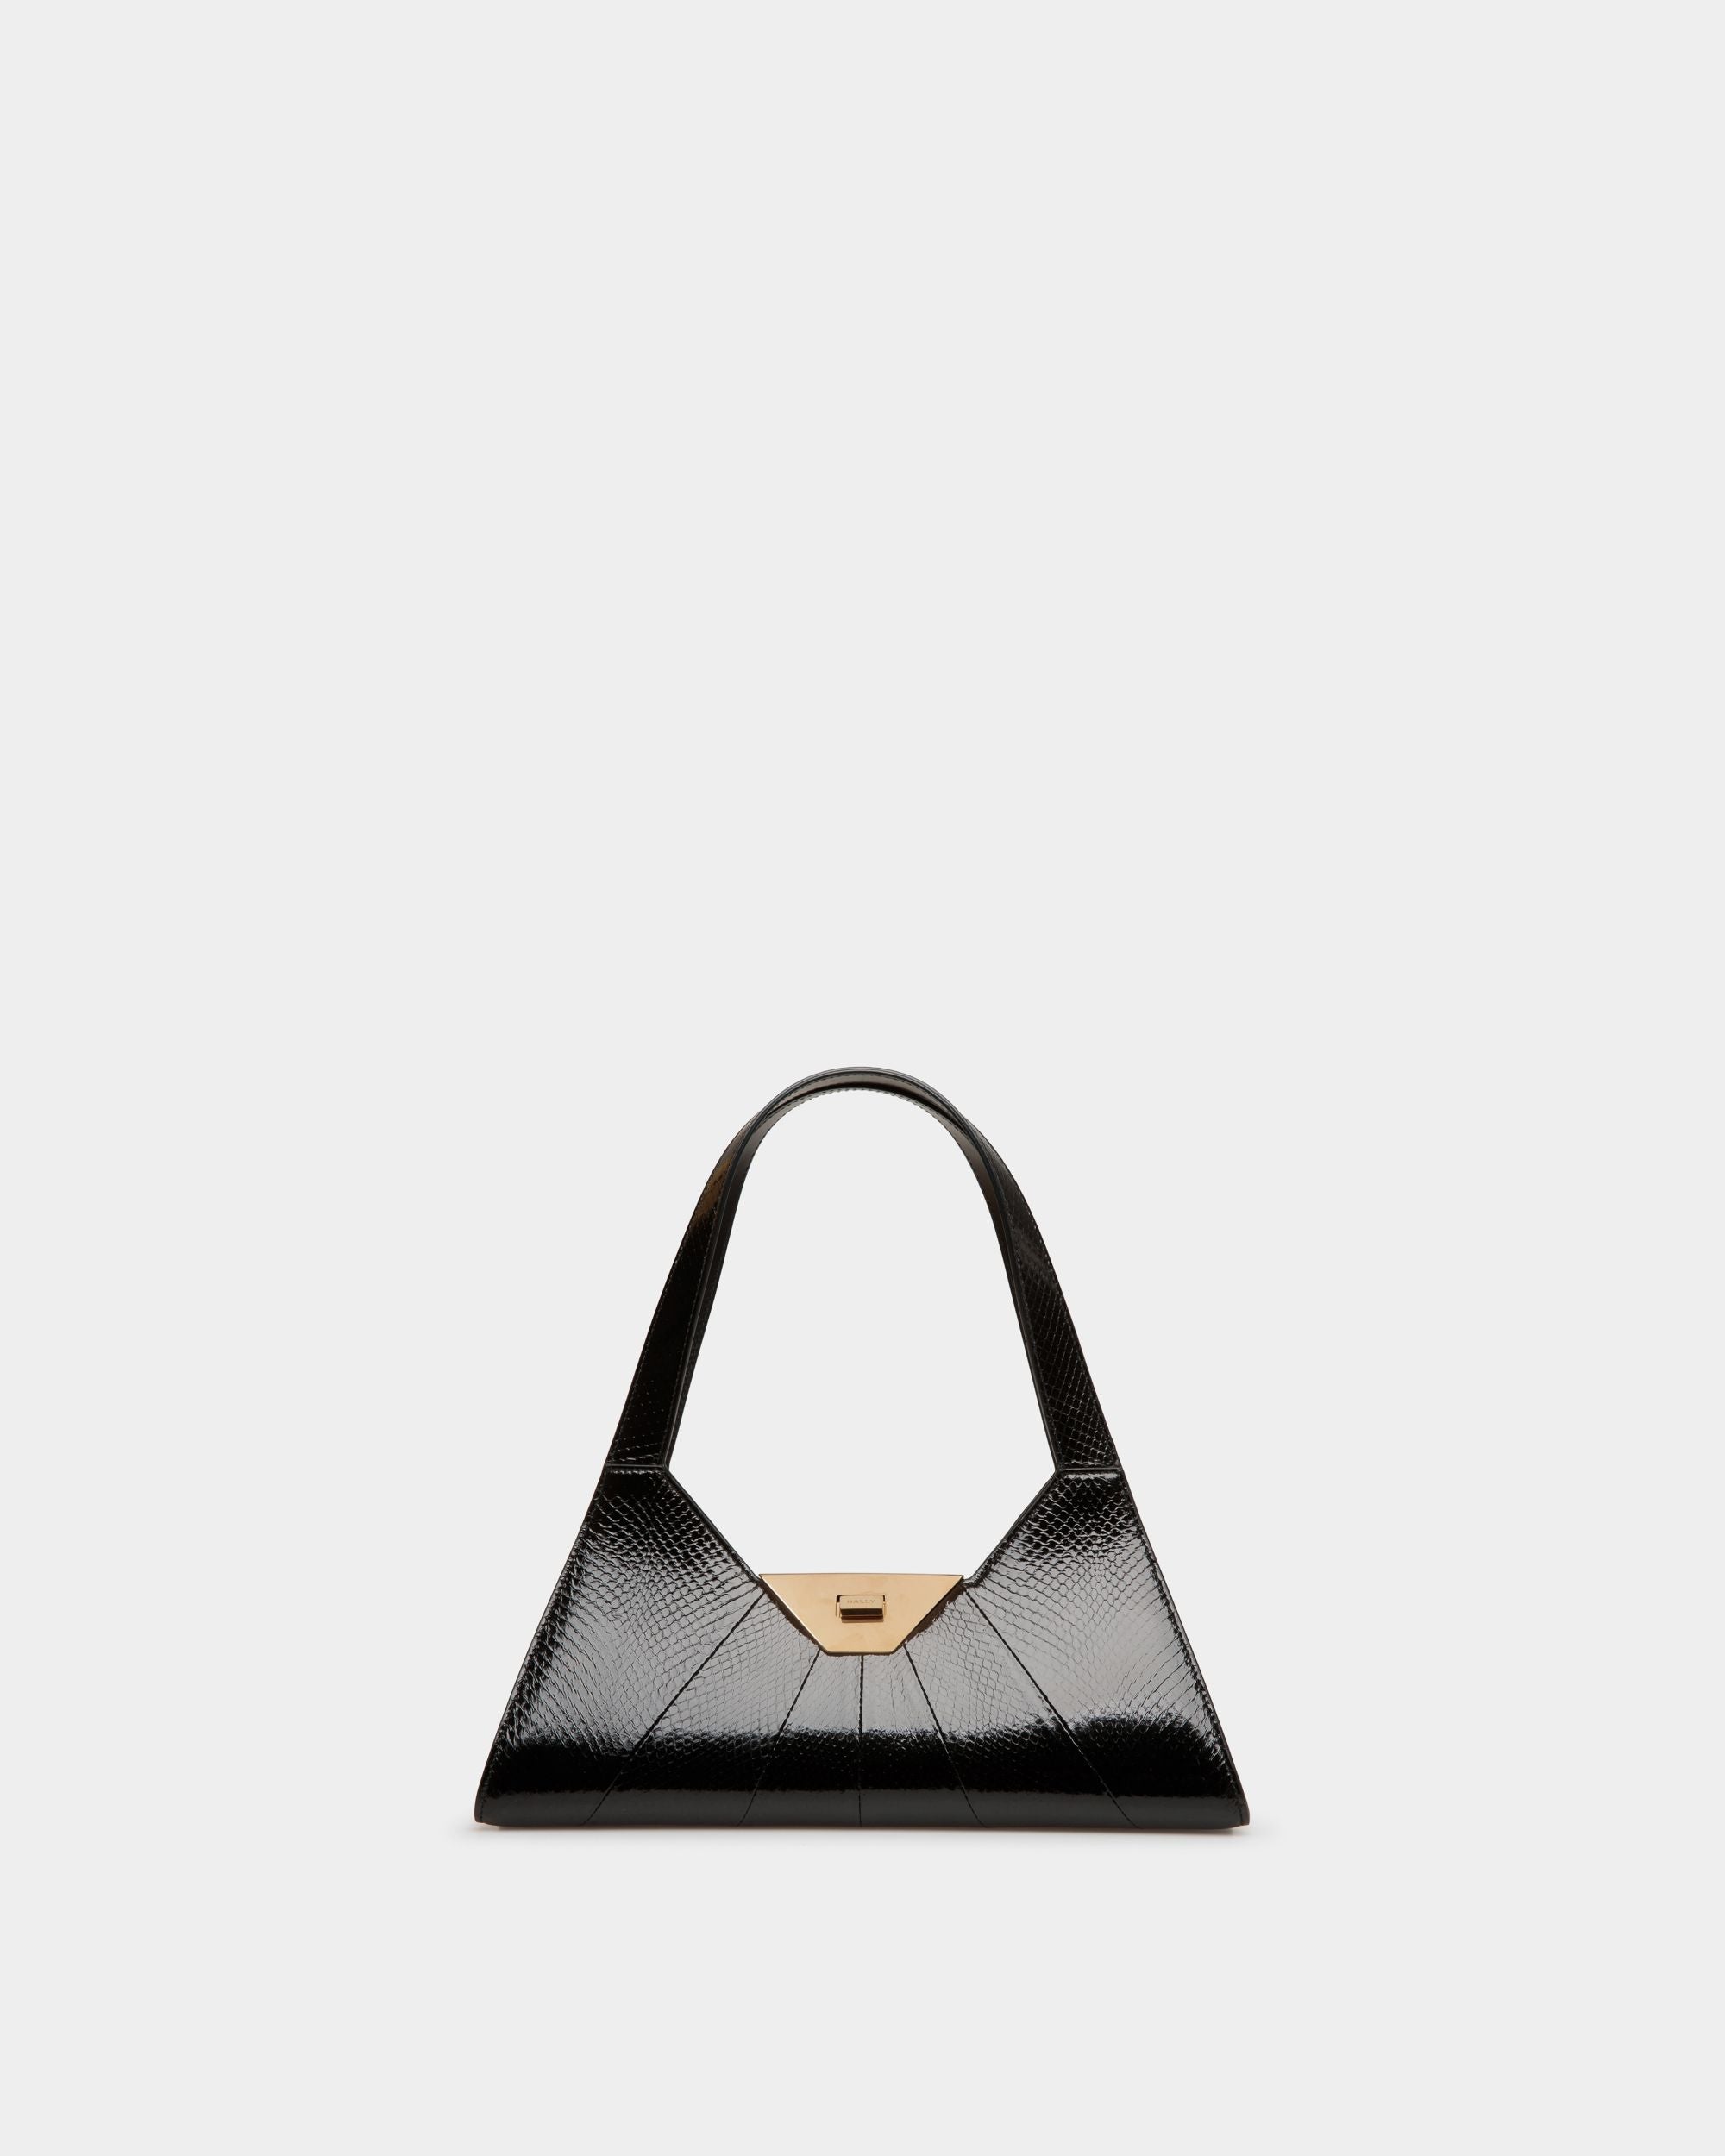 Tilt Shoulder Bag | Women's Bags | Black Snakeskin Leather | Bally | Still Life Front